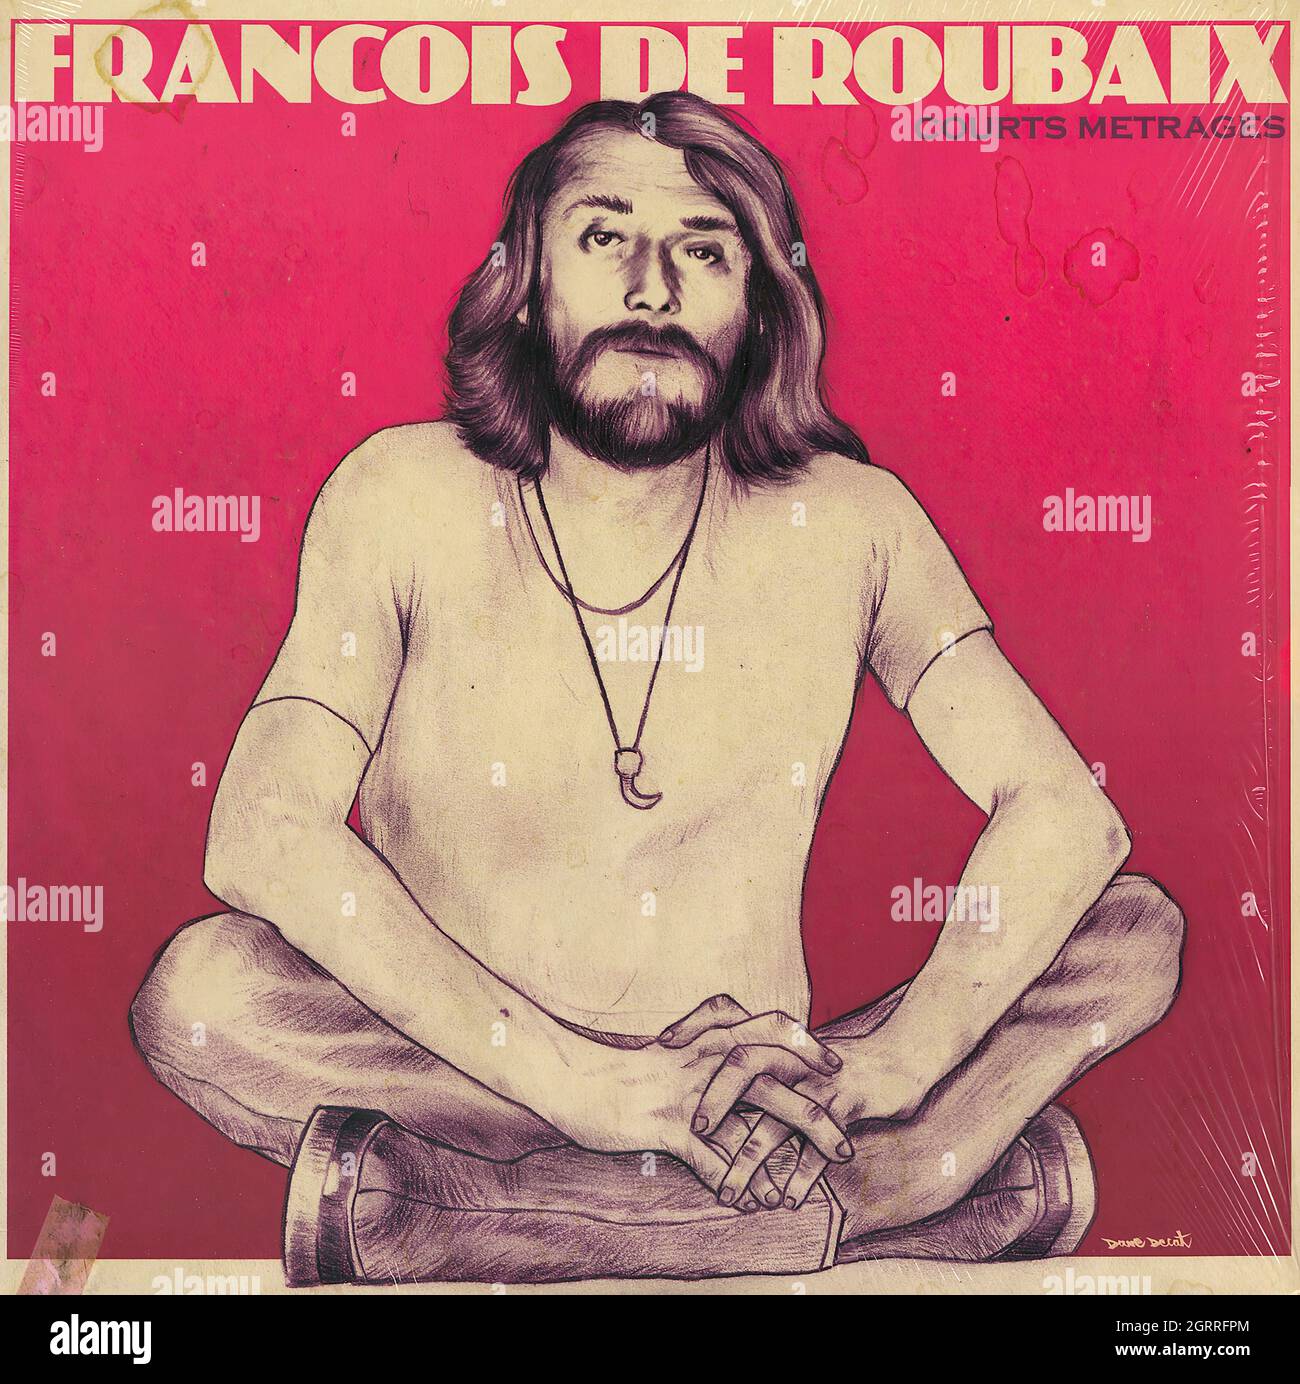 François De Roubaix - Courts métrages - Vintage Vinyl Record Cover Stock Photo